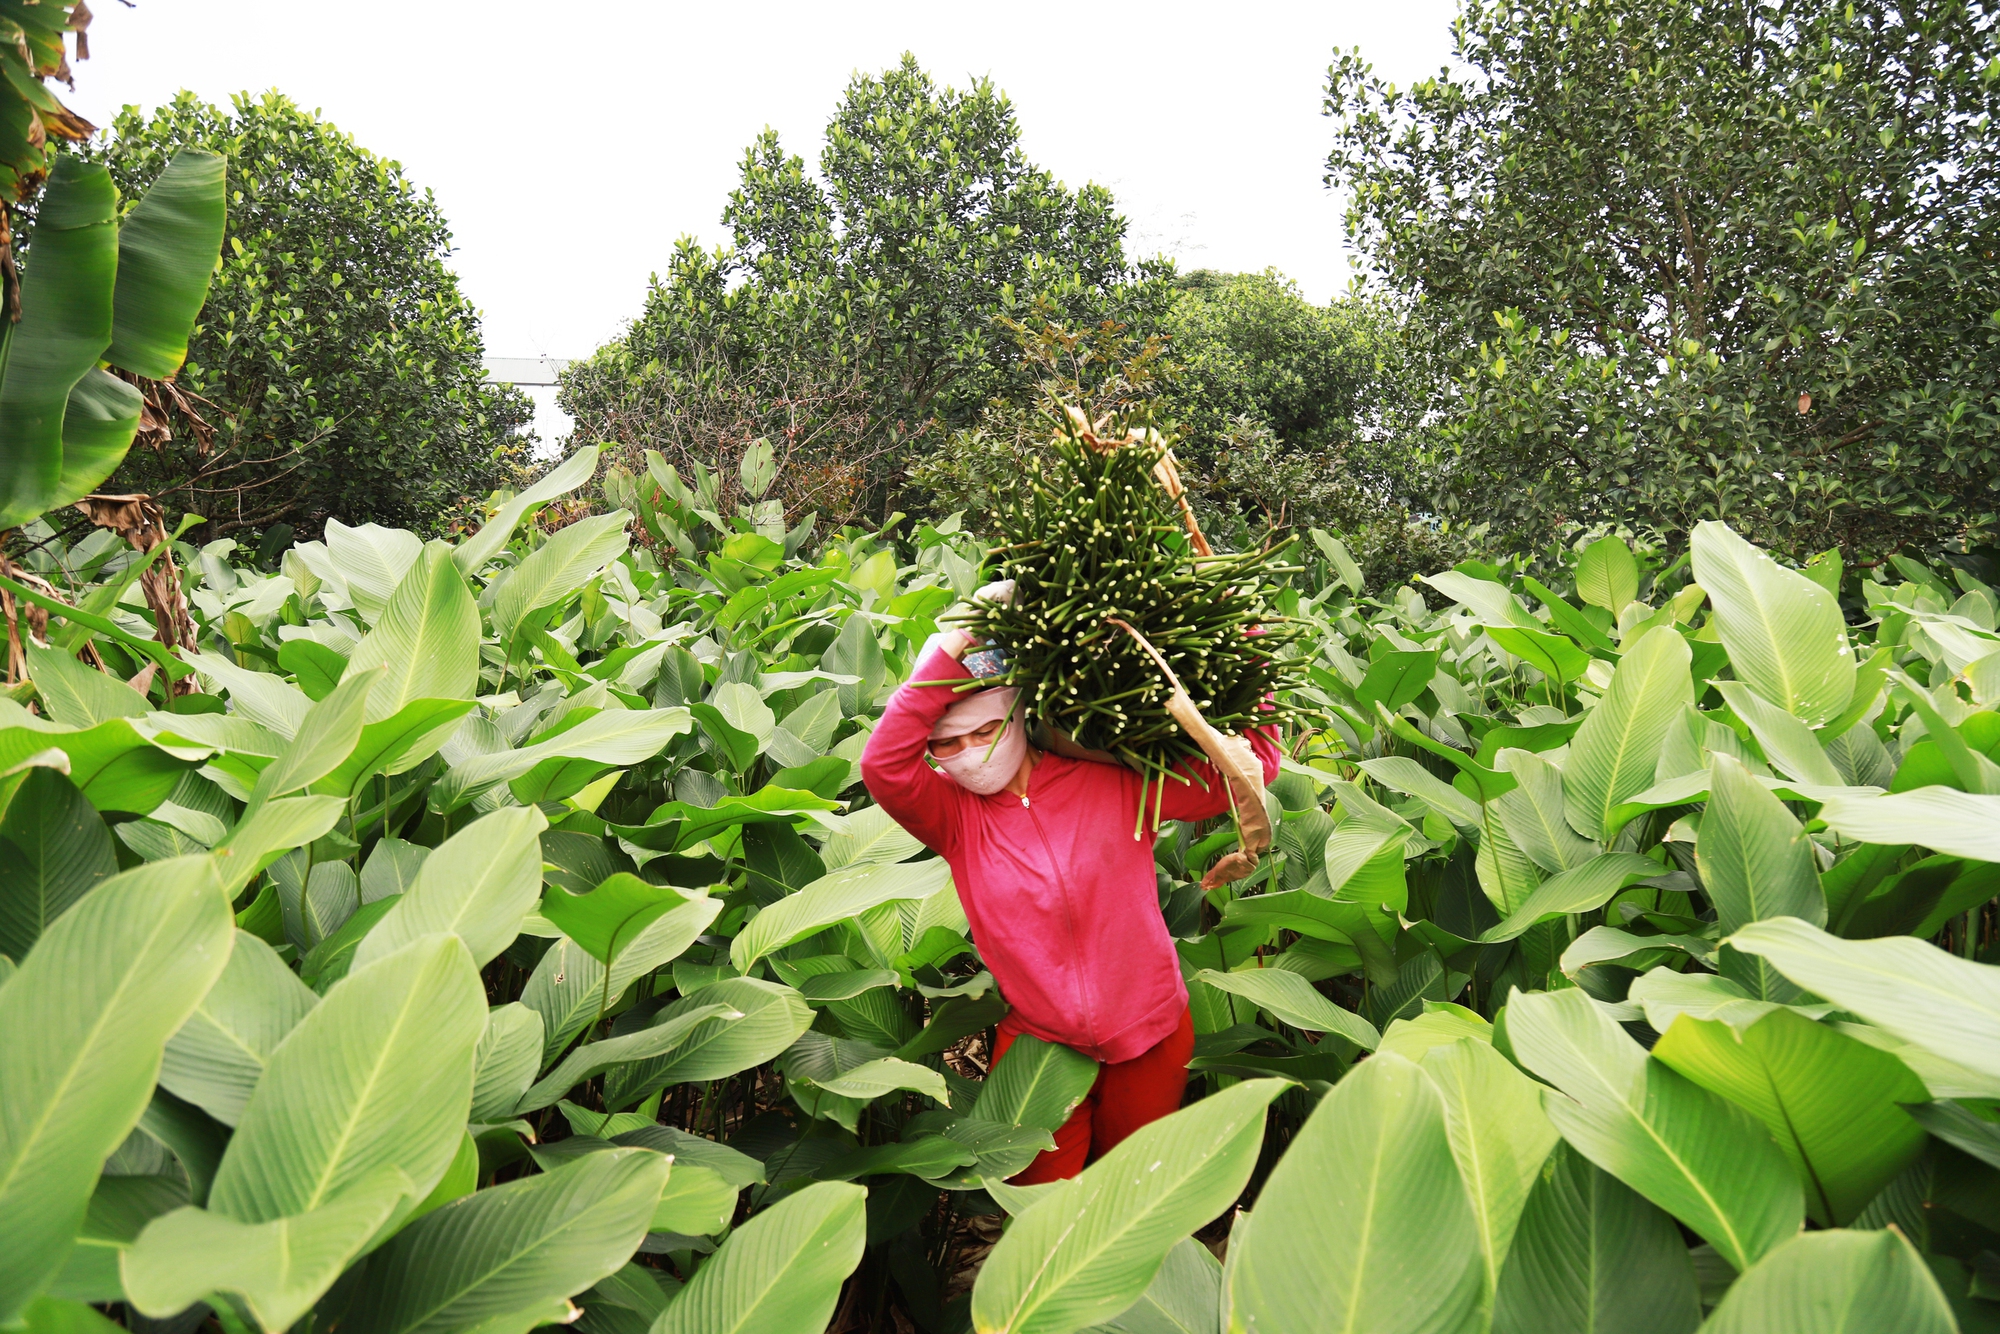 Tổng diện tích trồng lá dong riềng thôn Tràng Cát hơn 20ha, chủ yếu là đất vườn, đất ở của người dân.